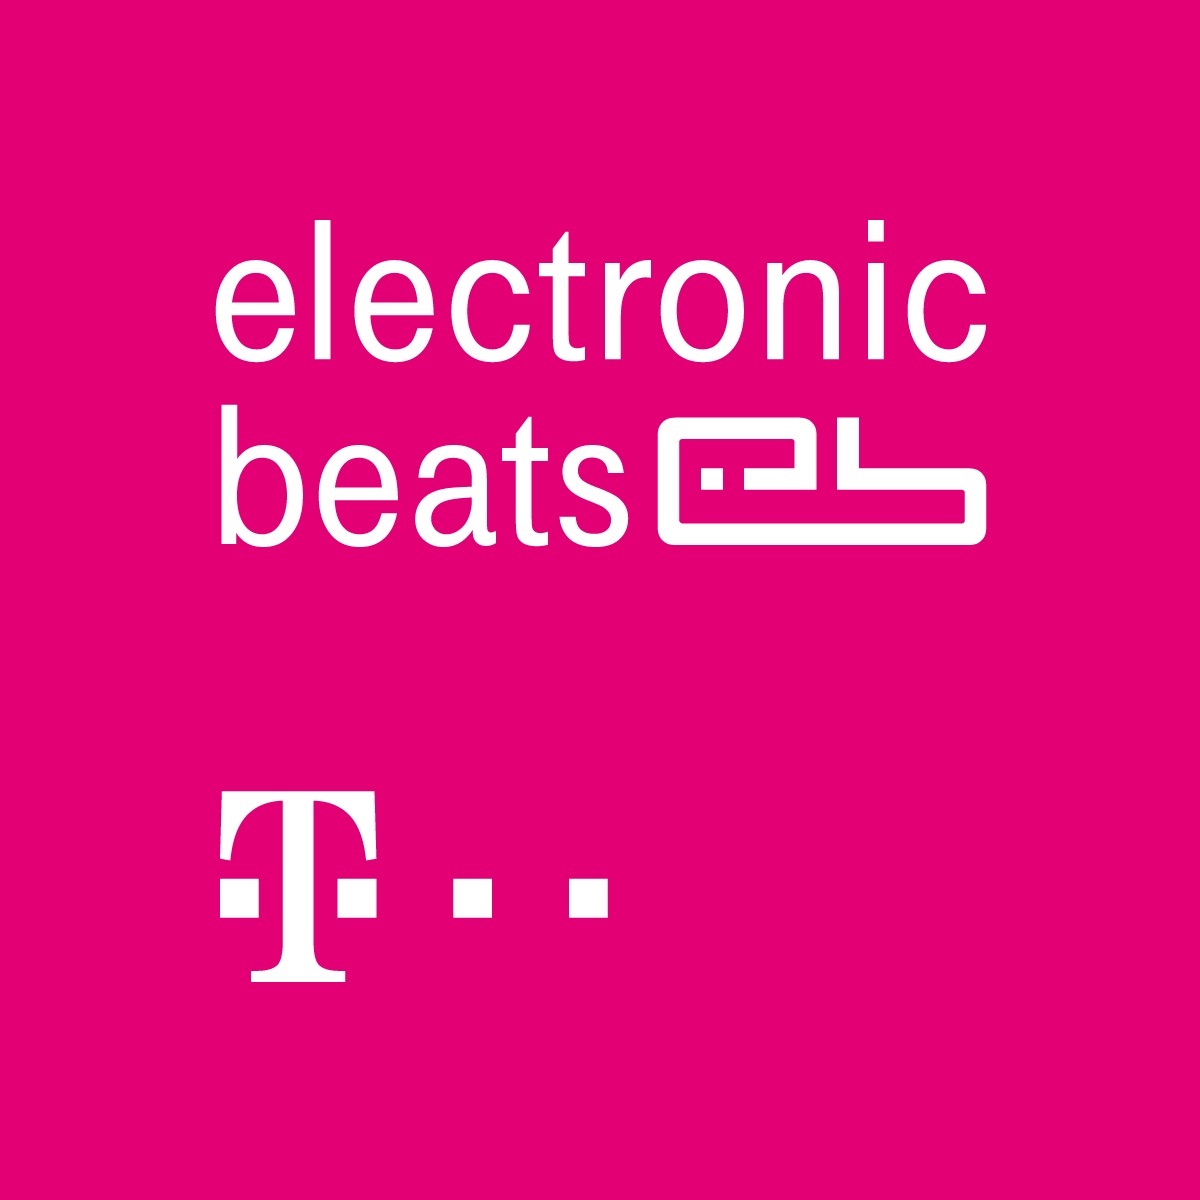 1 an de #Netliberare: Telekom anunță două milioane de clienţi care utilizează ofertele #Netliberare şi lansează platforma Telekom Electronic Beats